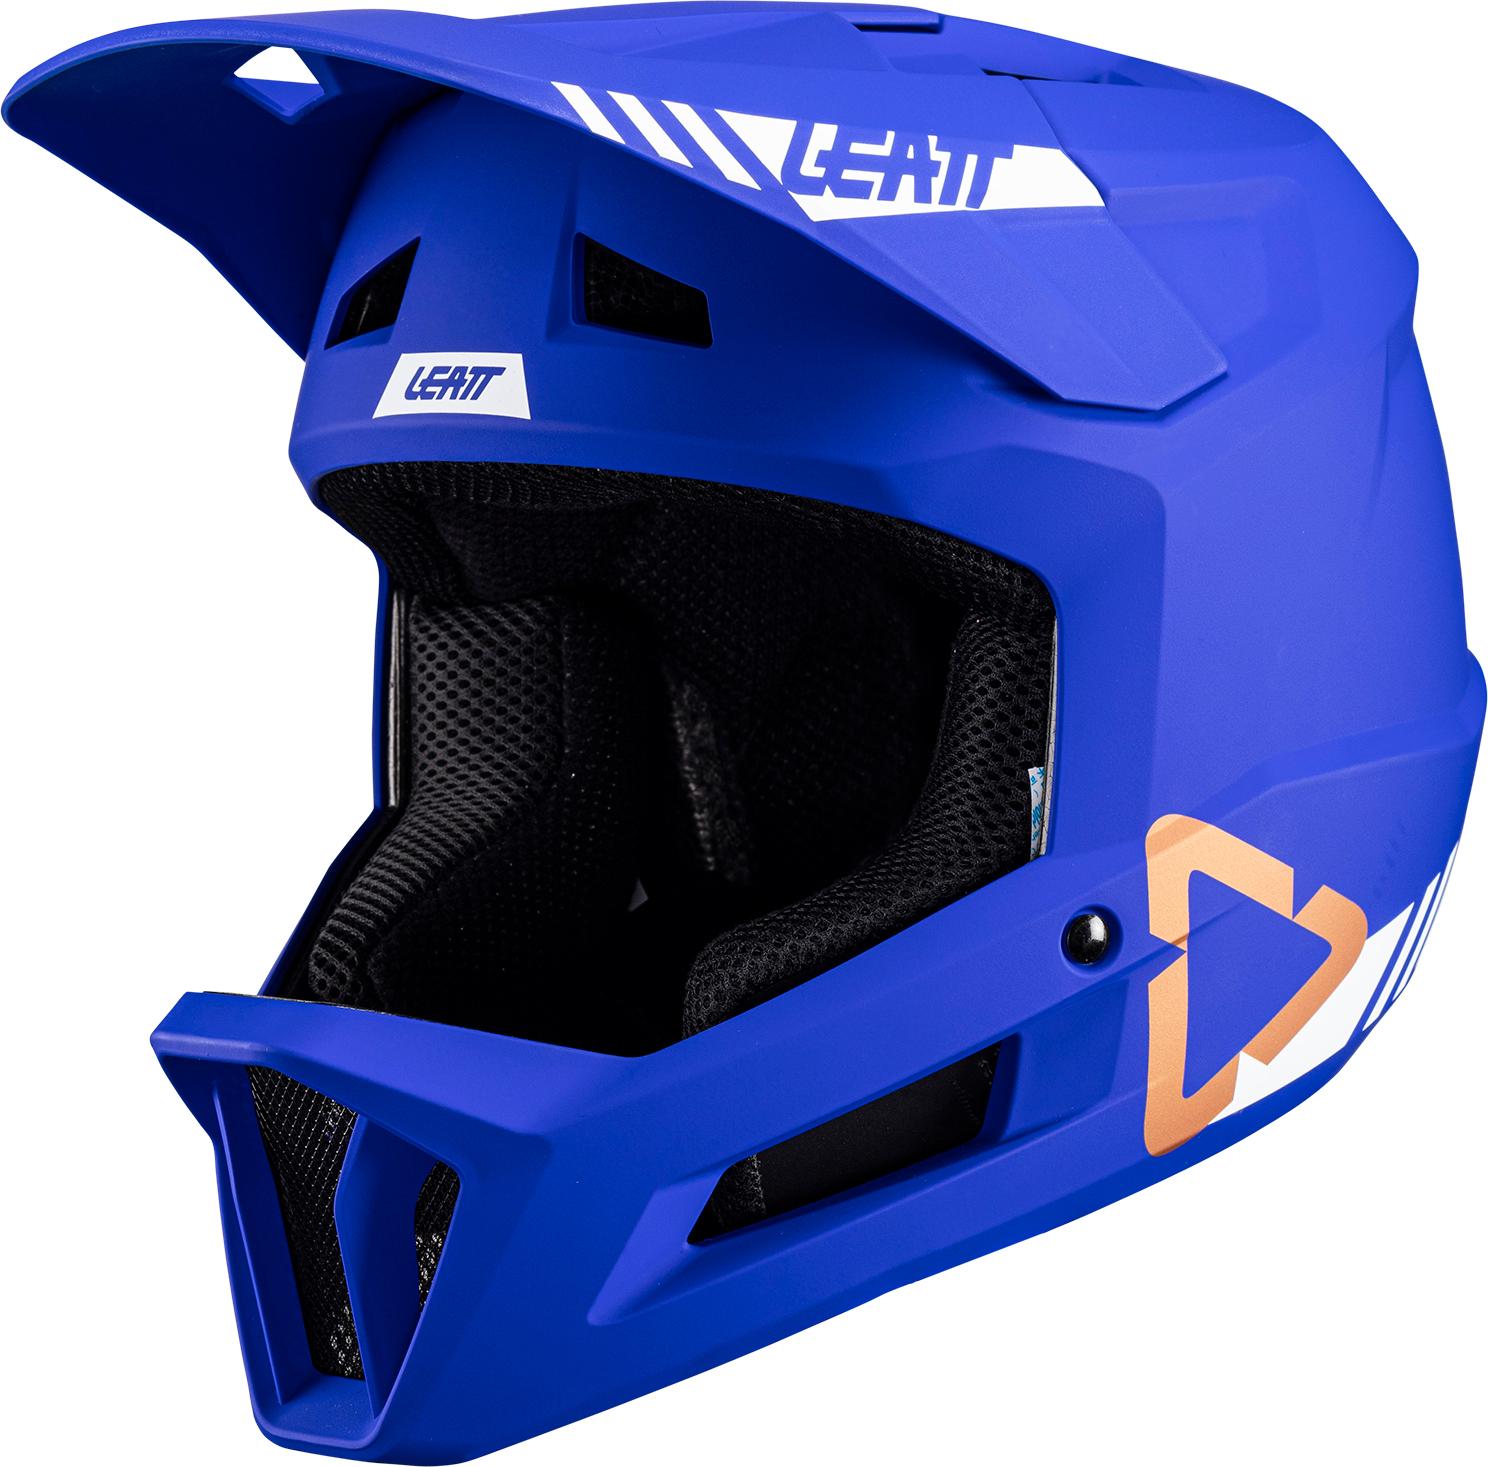 Leatt Junior Mtb Gravity 1.0 Helmet - Ultra Blue